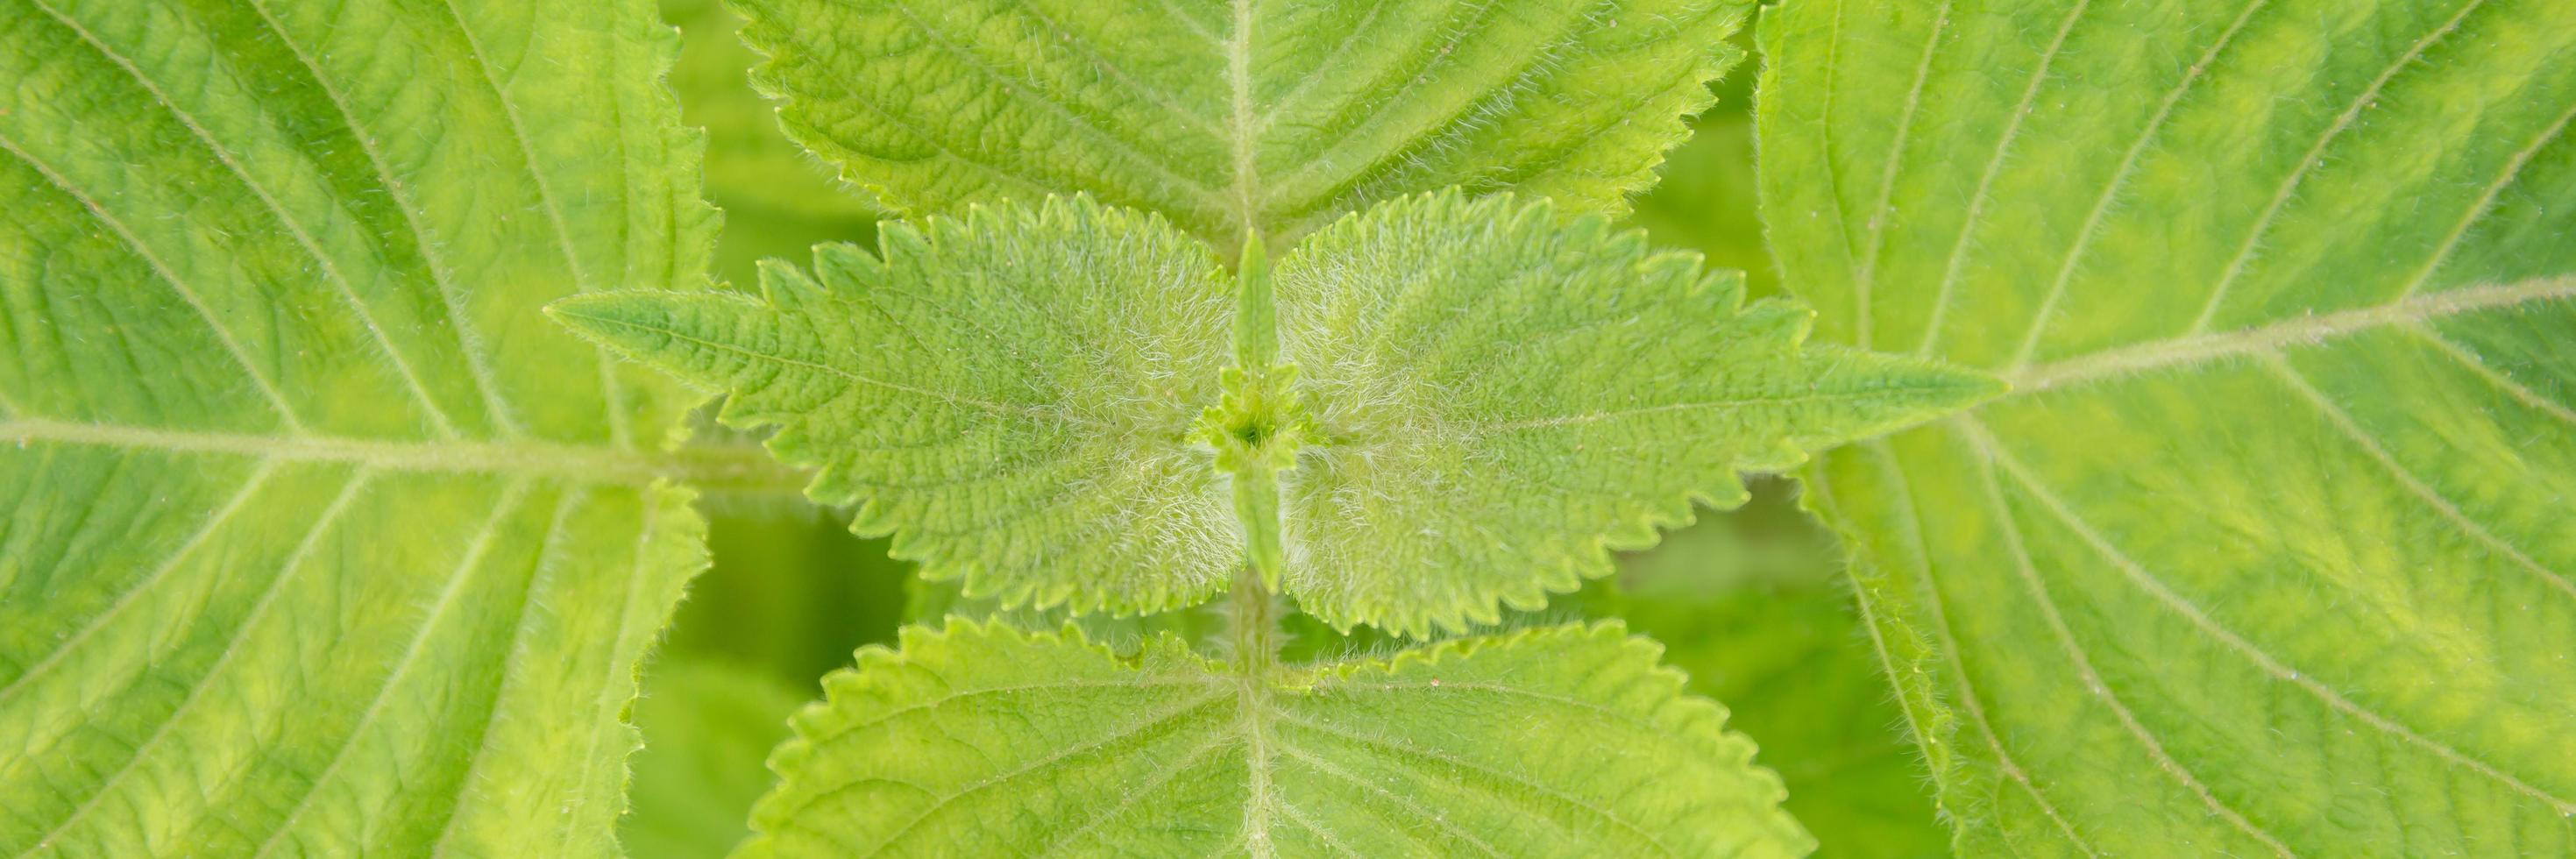 close-up de mudas de perilla frutescens folha verde orgânica em campo no verão. crescimento de plantas vegetais de ervas no jardim para uso de alimentos saudáveis. bandeira com fundo foto